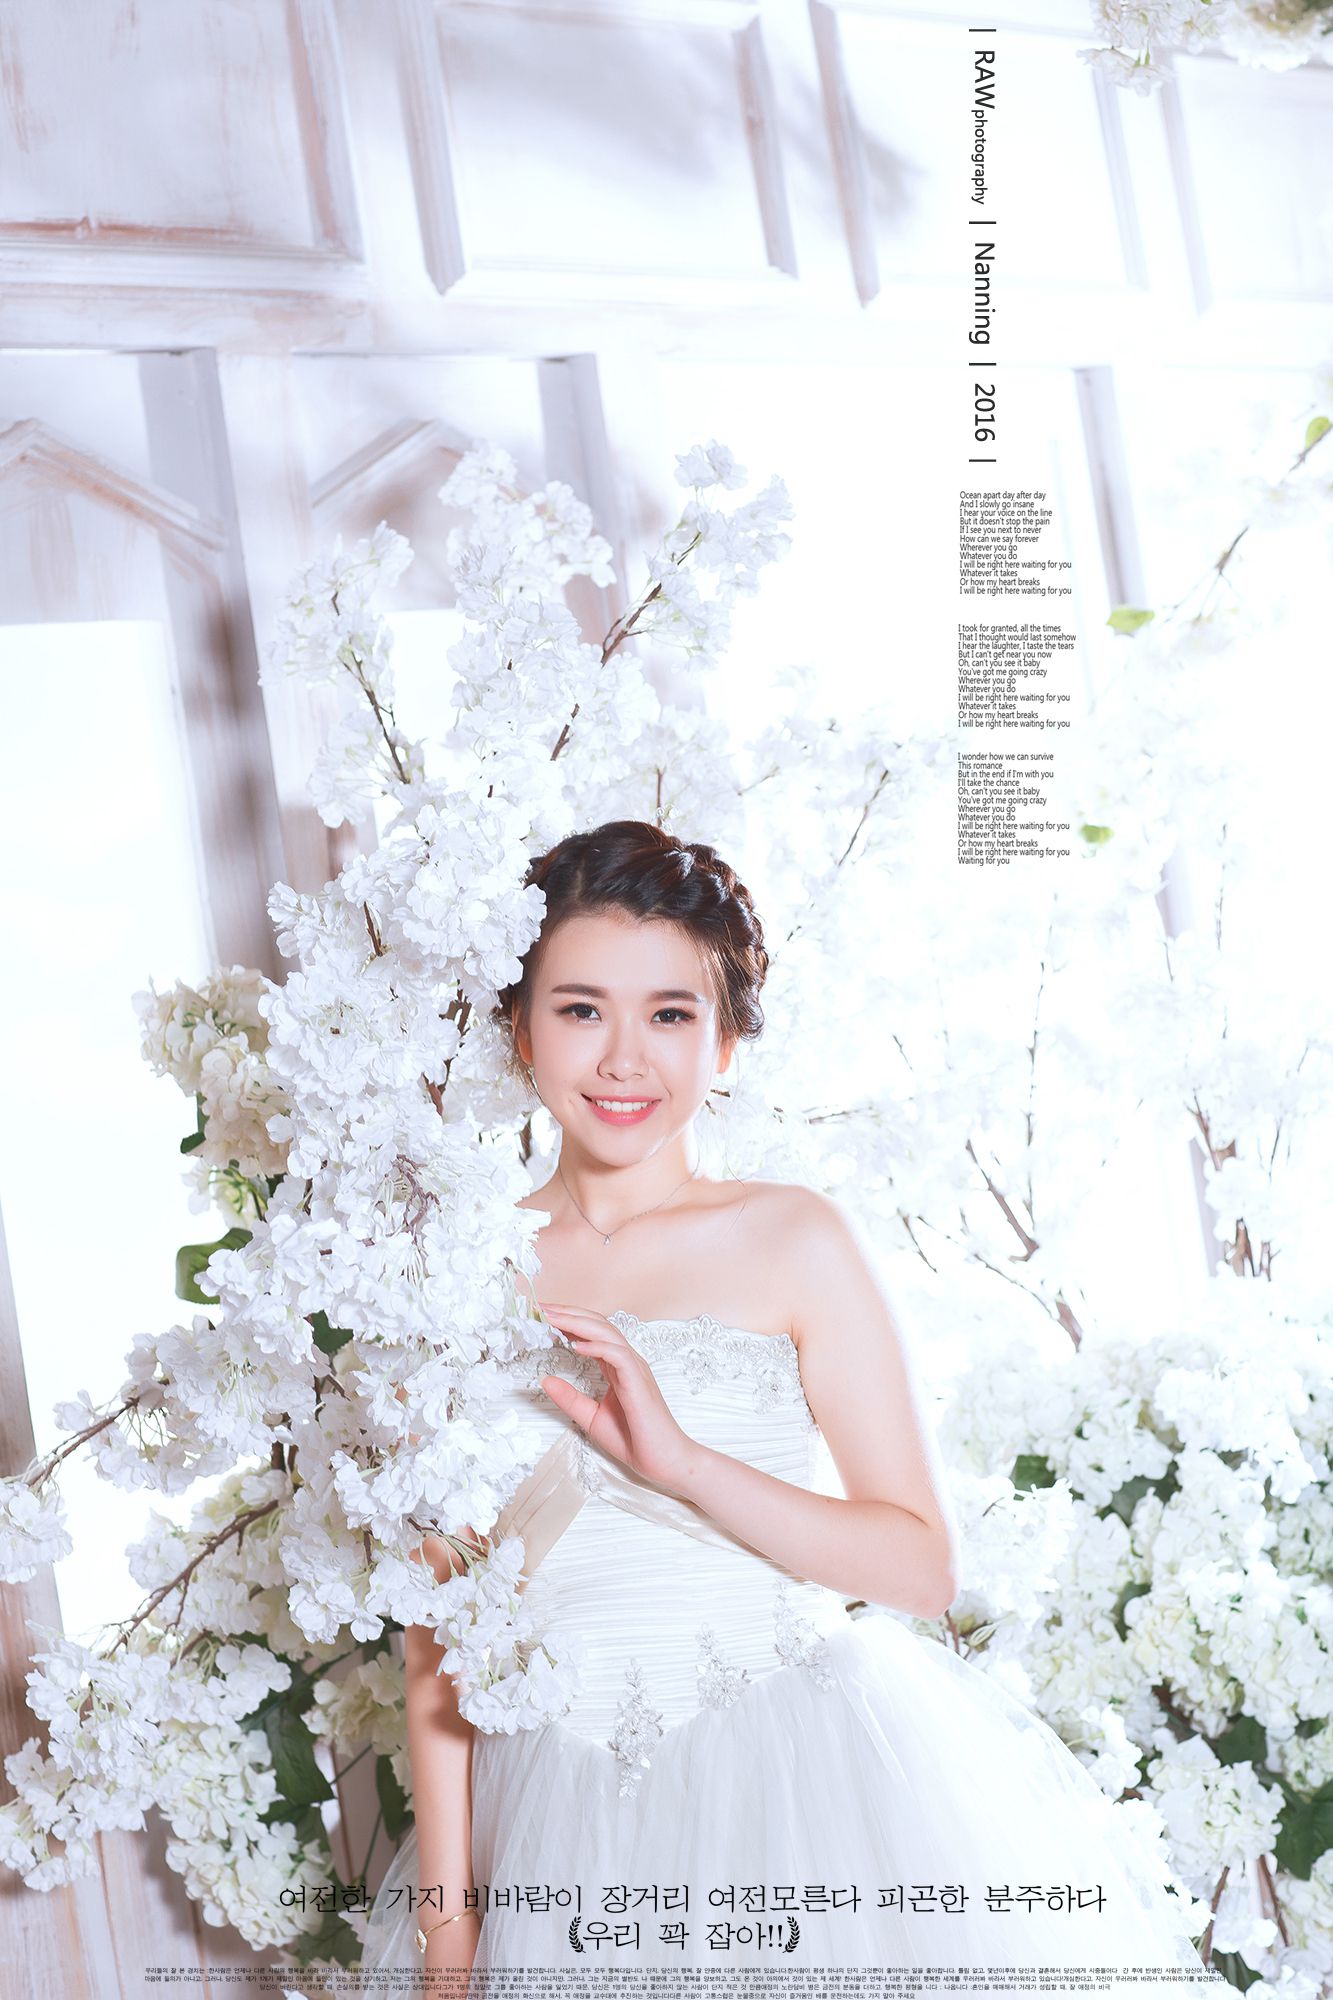 2017年7月广州结婚照,茂名婚纱照,婚纱照图片